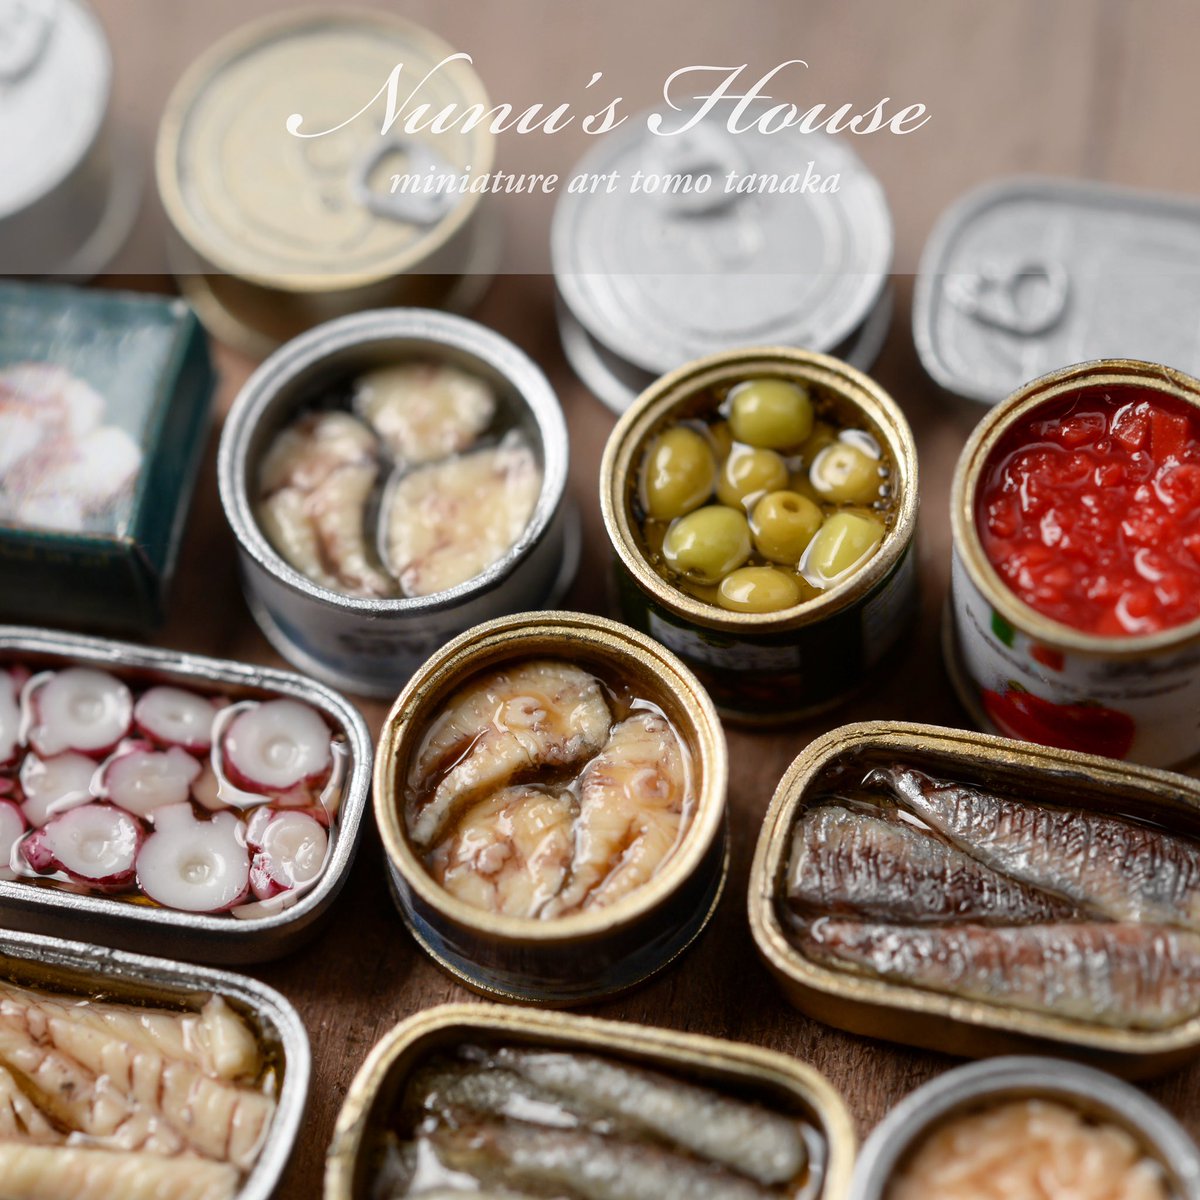 Nunu S House 田中智 ミニチュア缶にオリーブ トマト カット タコとかオイルサーディン 鯖の水煮と味噌煮 Tunaを 詰めました